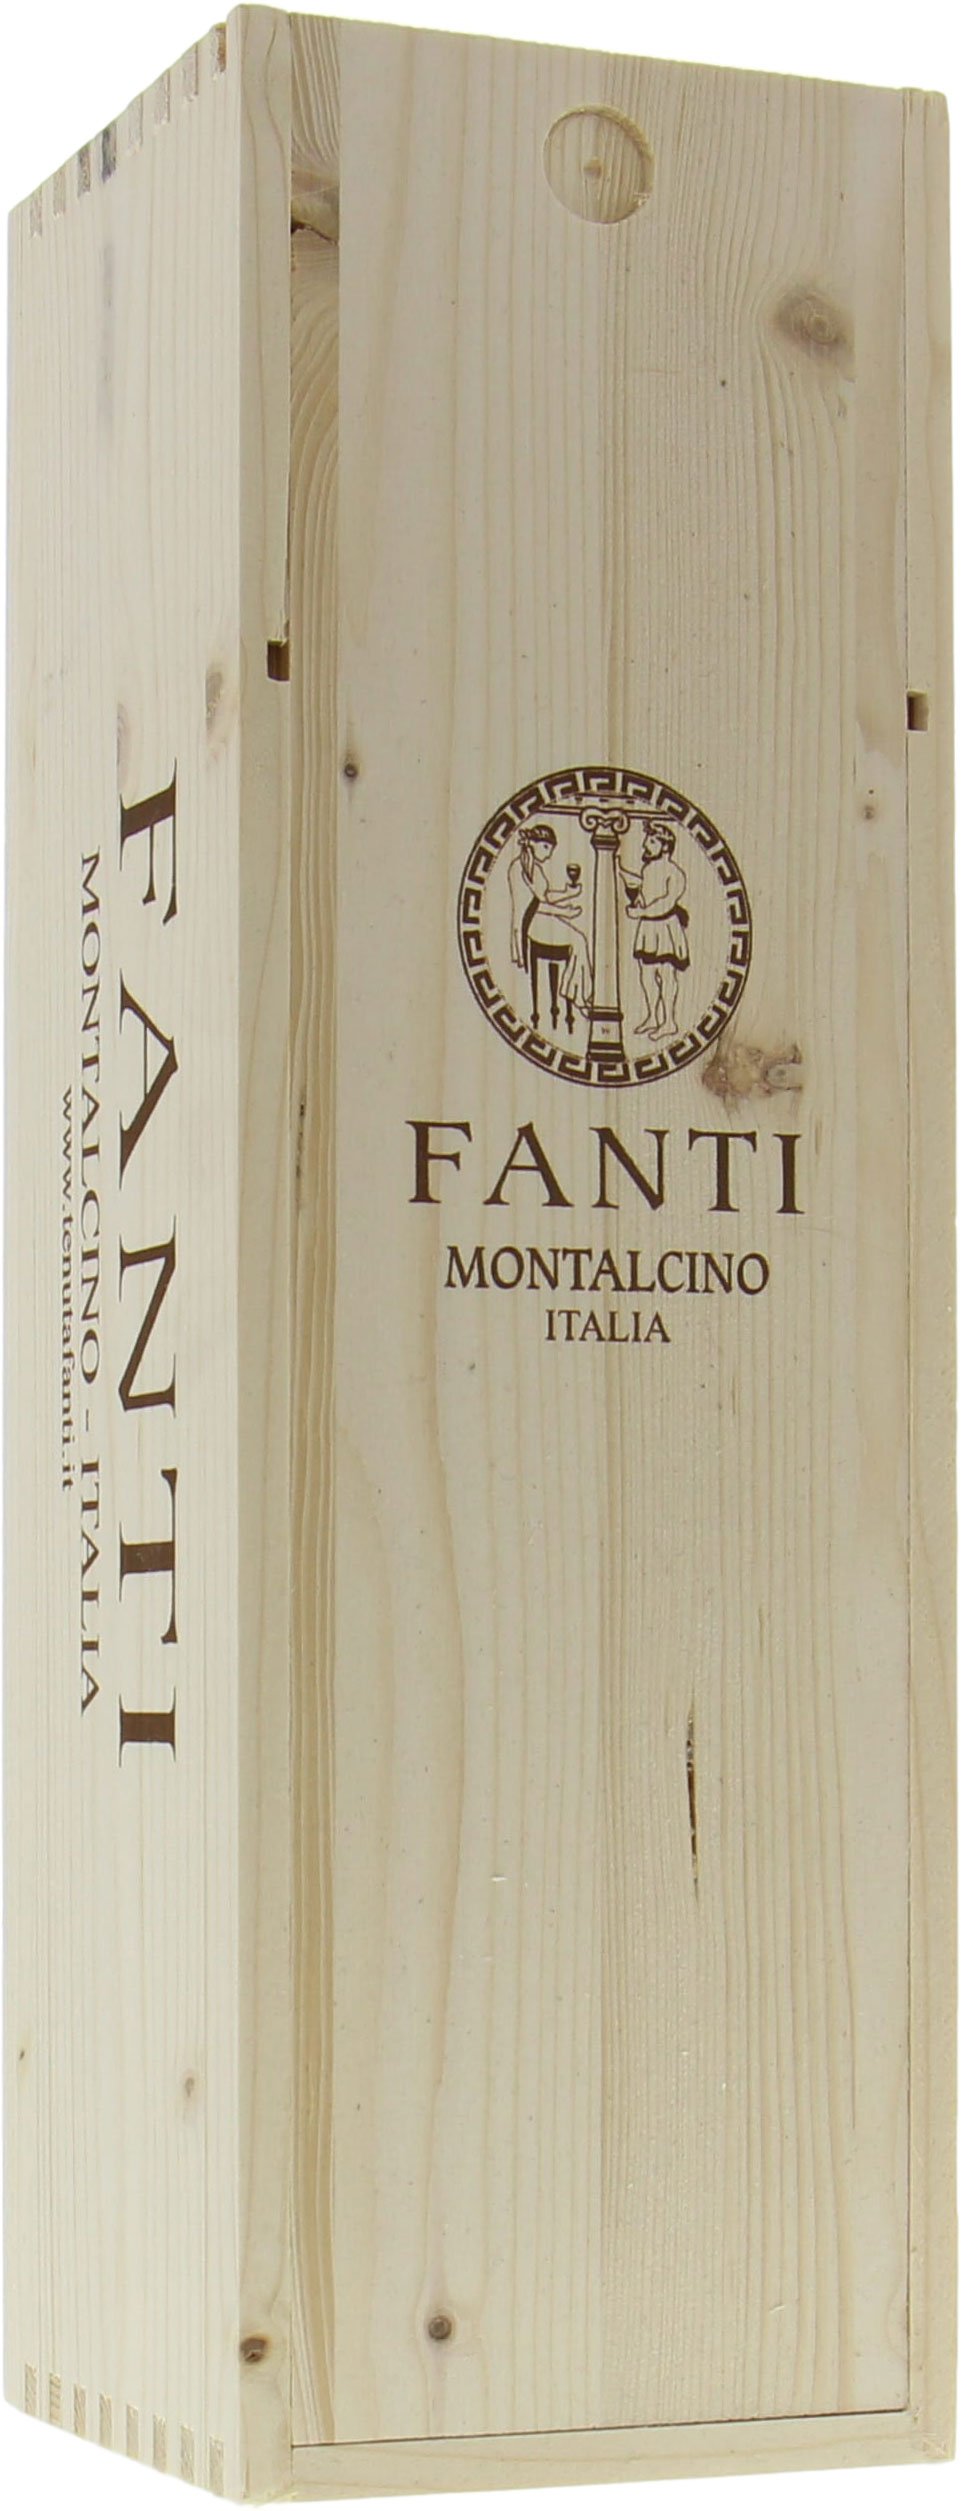 Tenuta Fanti - Brunello di Montalcino 2012 From Original Wooden Case